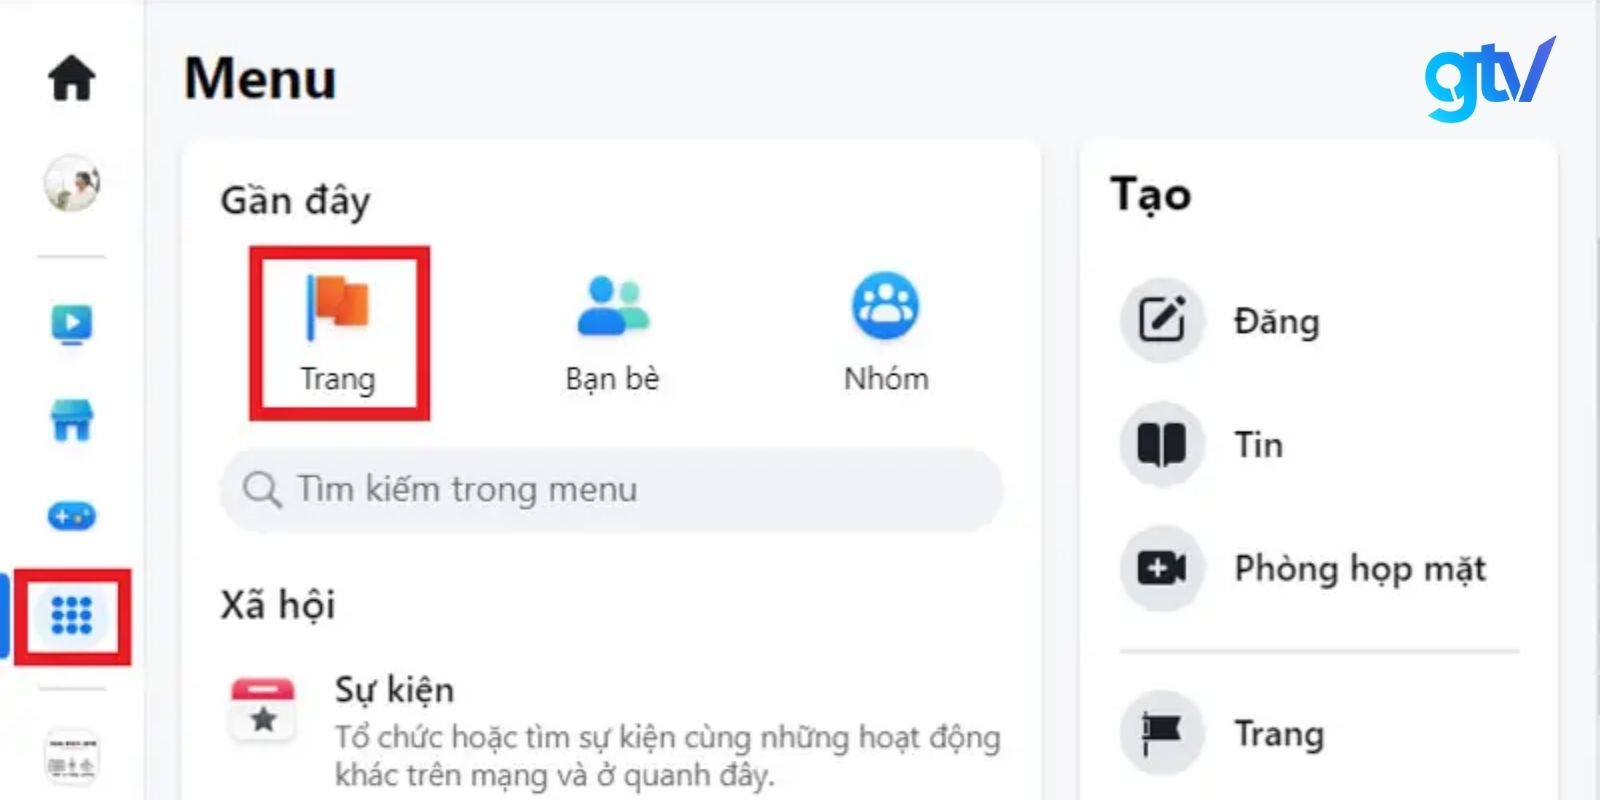 Vào ứng dụng Facebook, sau đó chọn “Trang”